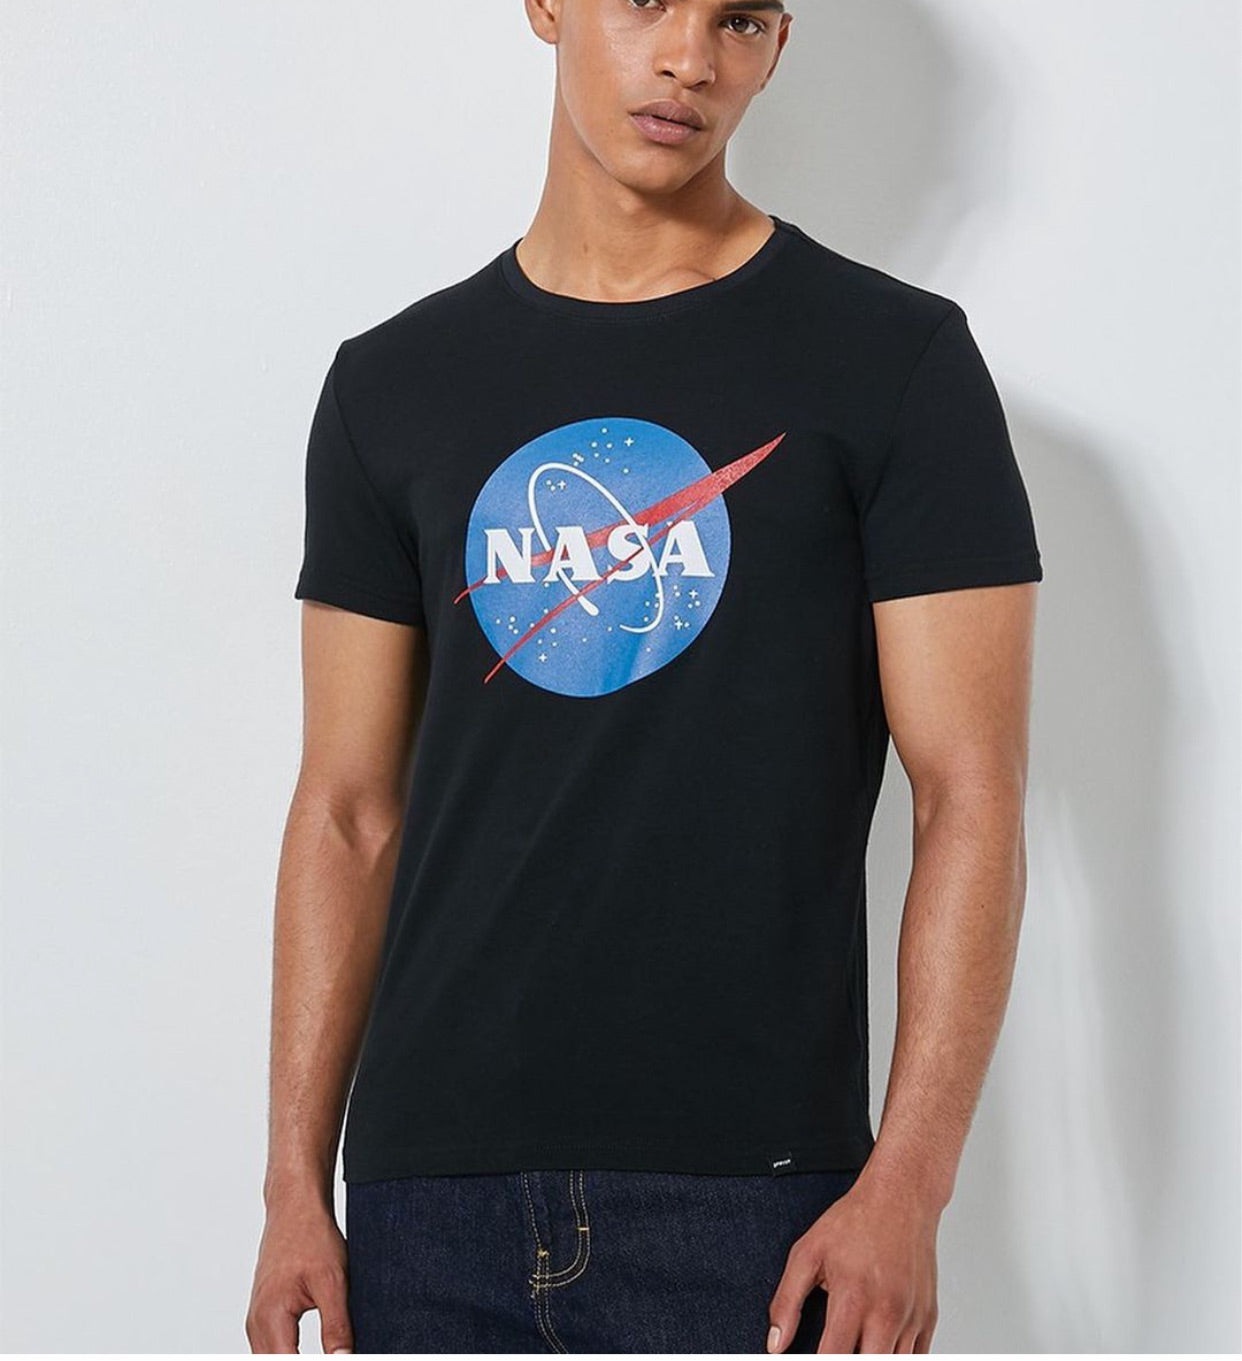 NASA tee